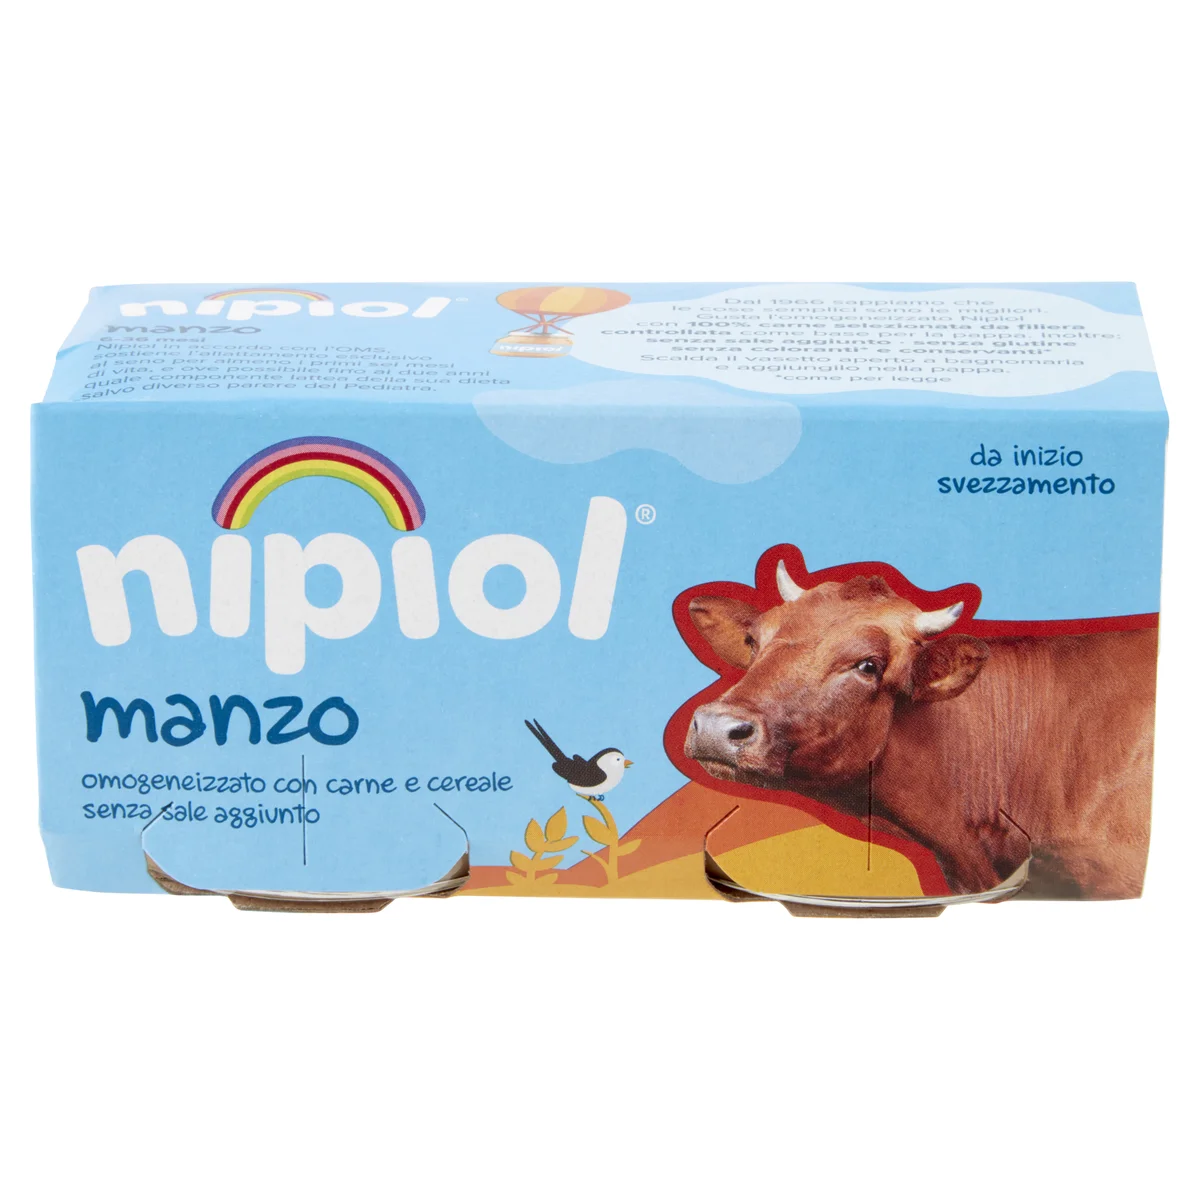 Omogeneizzato Nipiol 2x80g vitello - D'Ambros Ipermercato